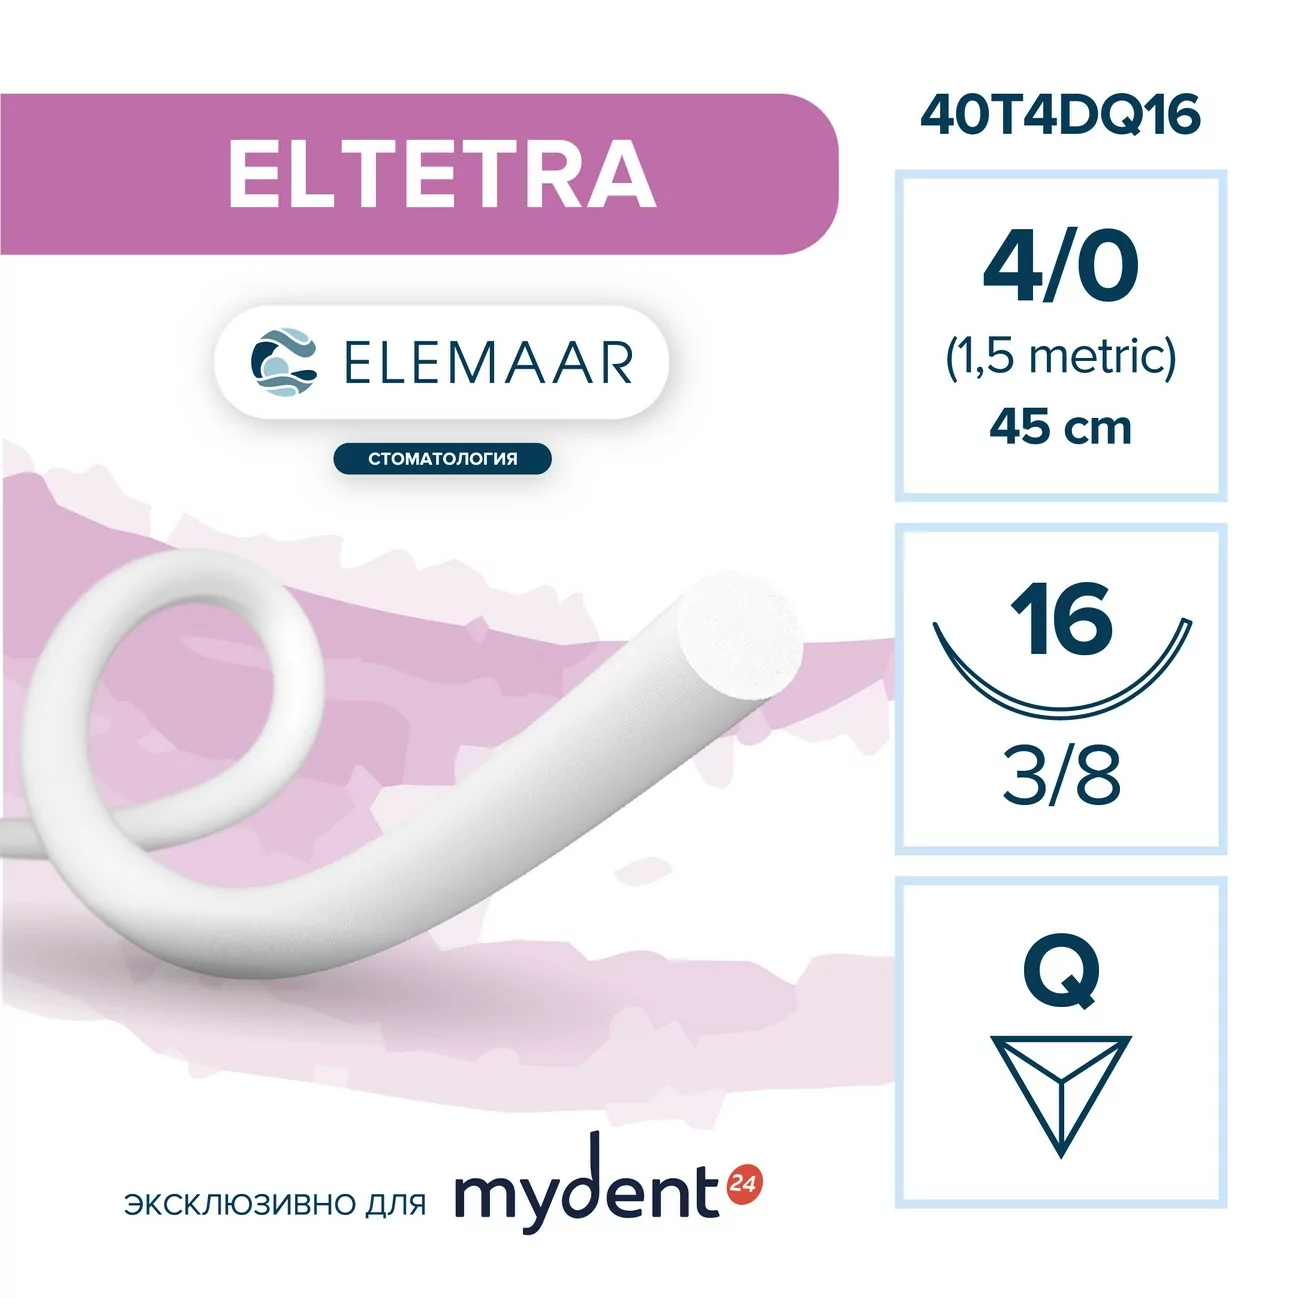 Шовный материал ELTETRA 4/0 (12 шт, 45 см, 3/8, 16 мм, обратно-режущая)